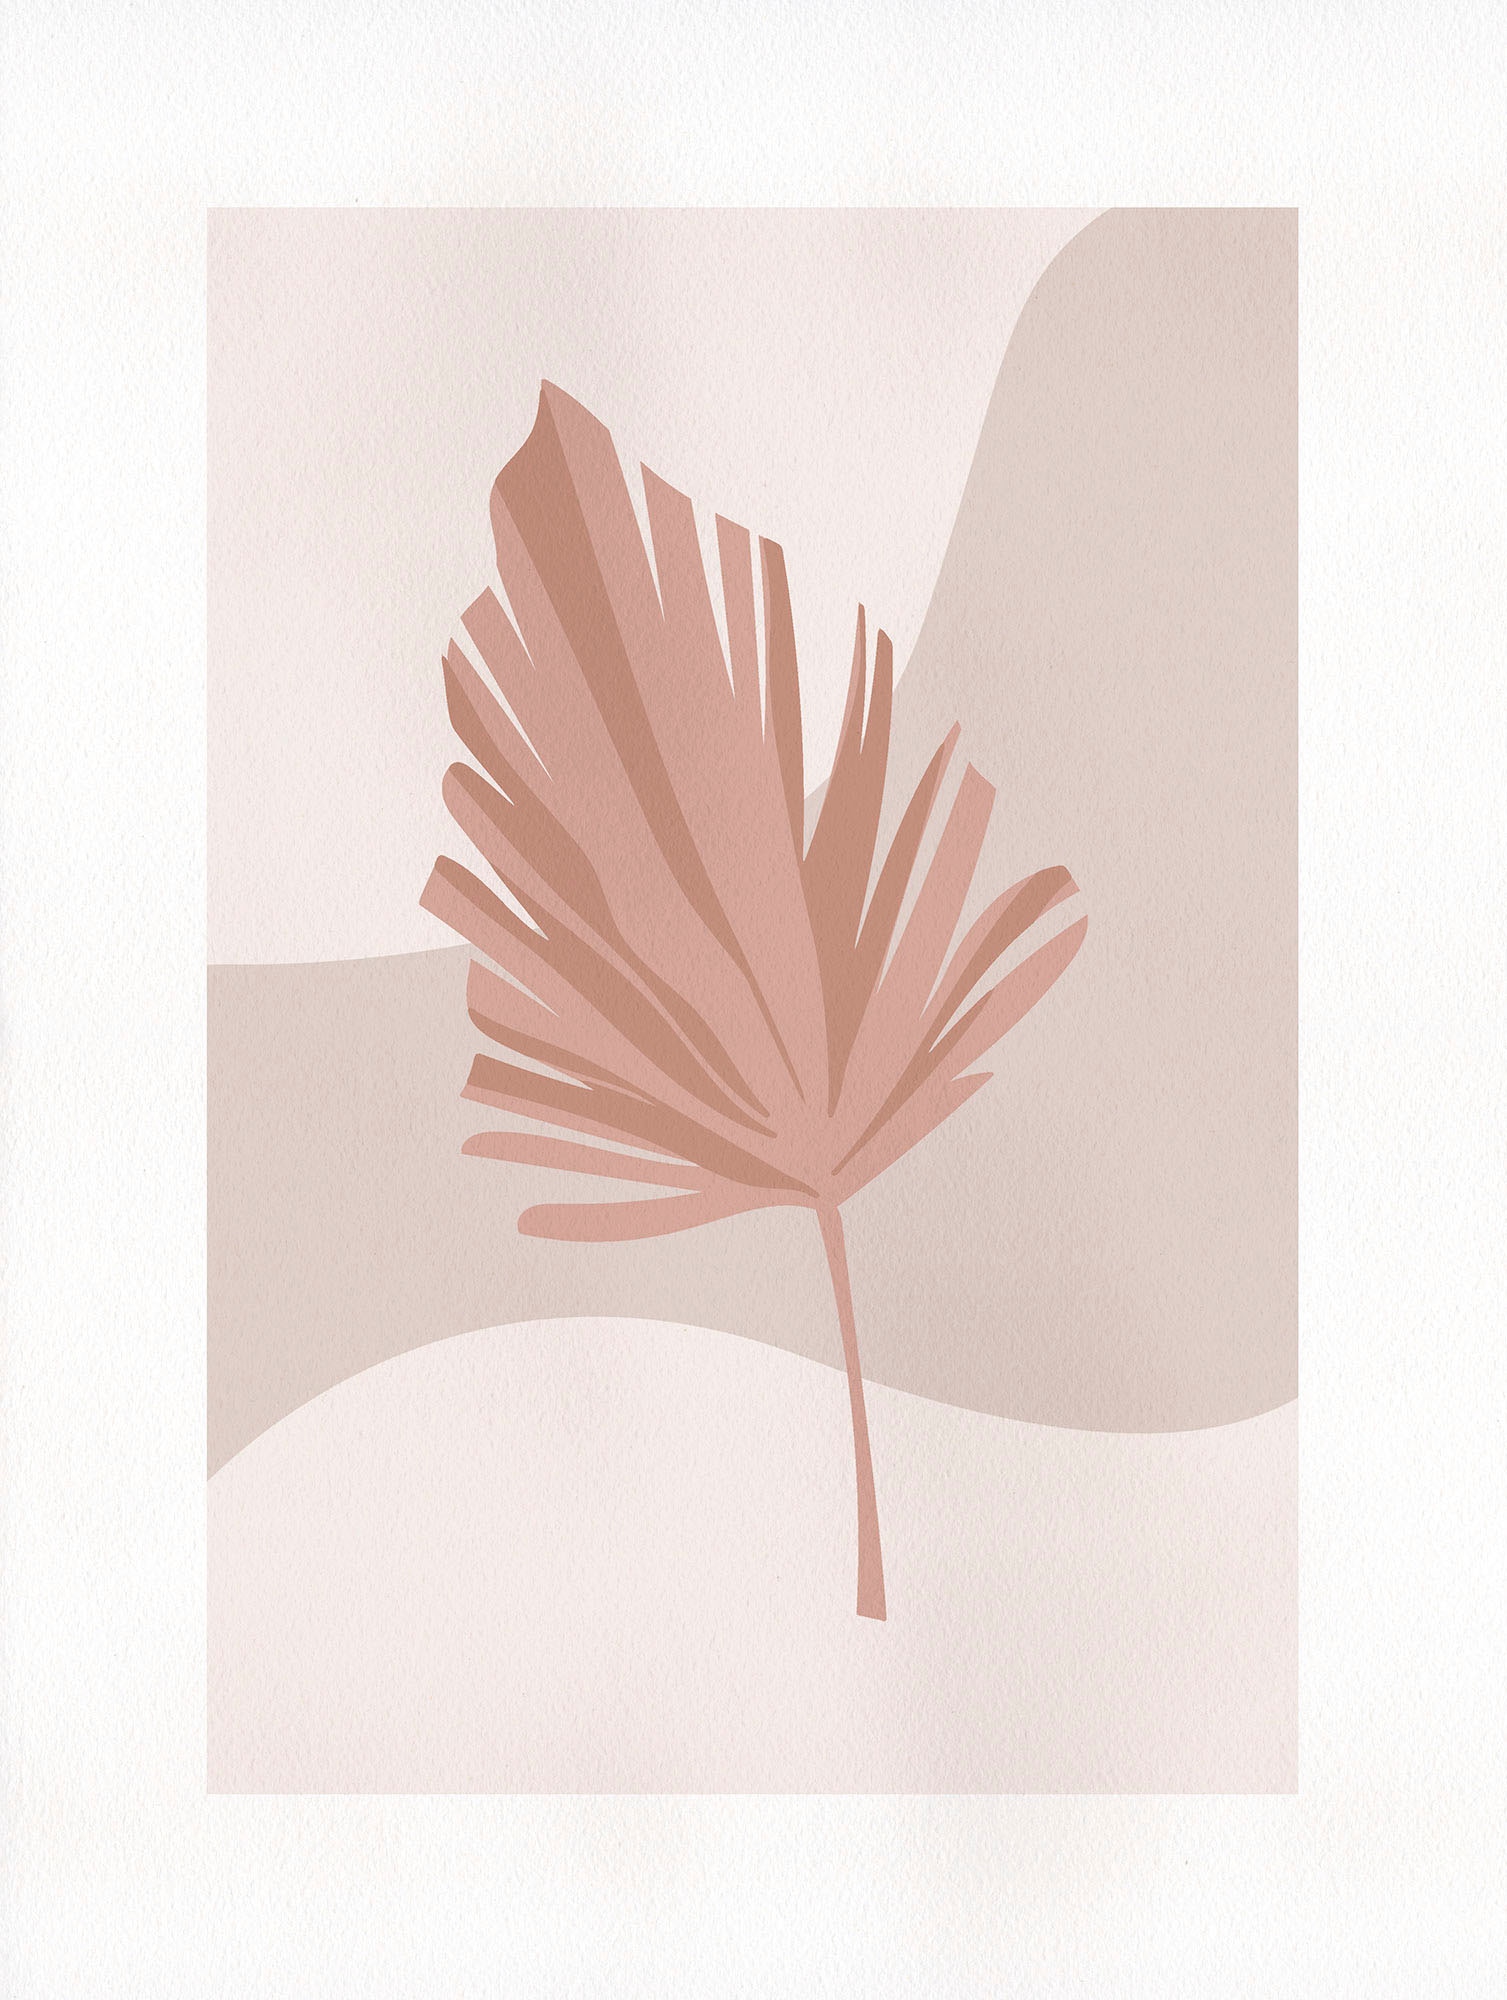 Komar Wandbild »Minimalist Leaf Lover«, (1 St.), Deutsches Premium-Poster  Fotopapier mit seidenmatter Oberfläche und hoher Lichtbeständigkeit. Für  fotorealistische Drucke mit gestochen scharfen Details und hervorragender  Farbbrillanz. bestellen